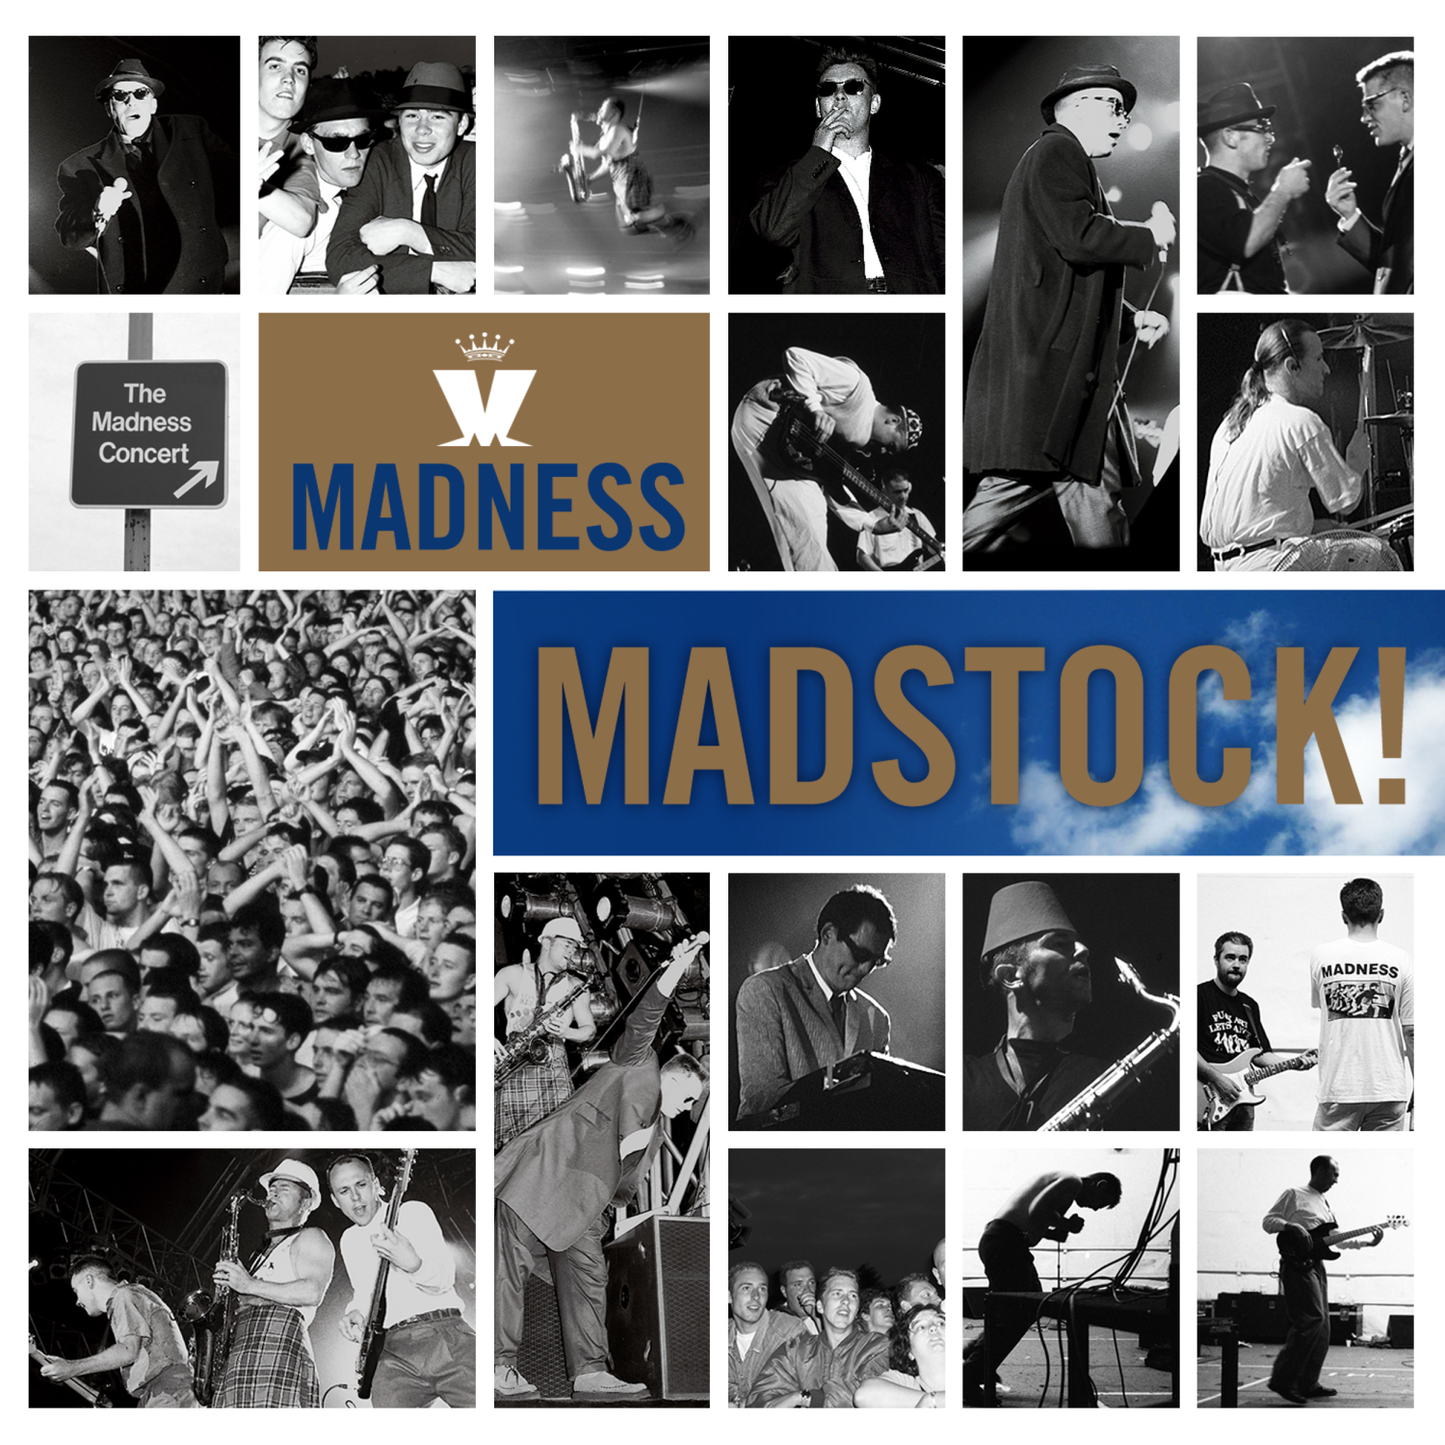 Madstock! CD/DVD